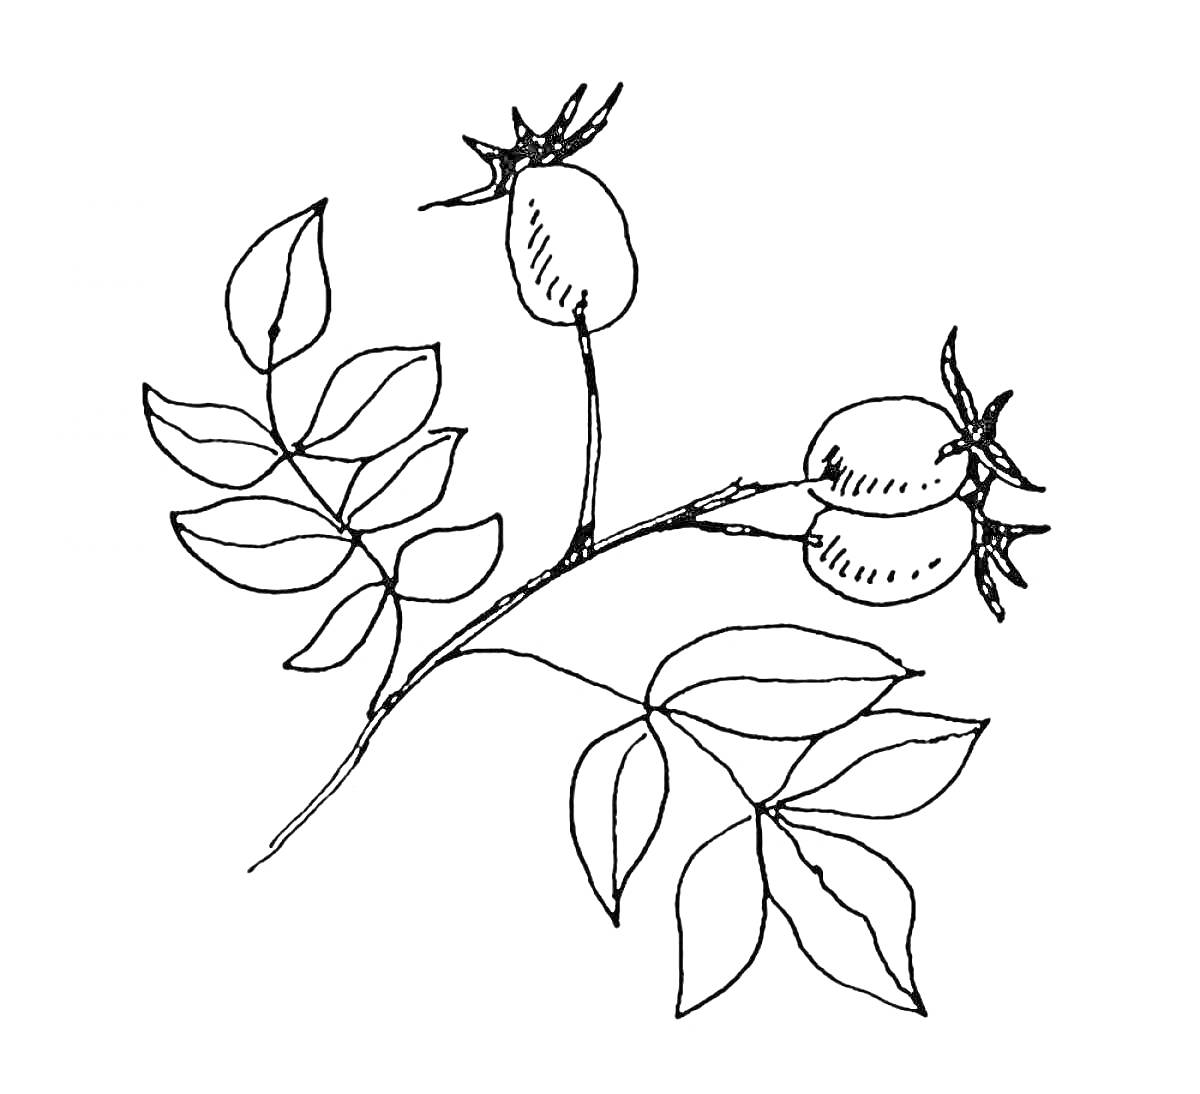 Ветвь шиповника с листьями и двумя ягодами